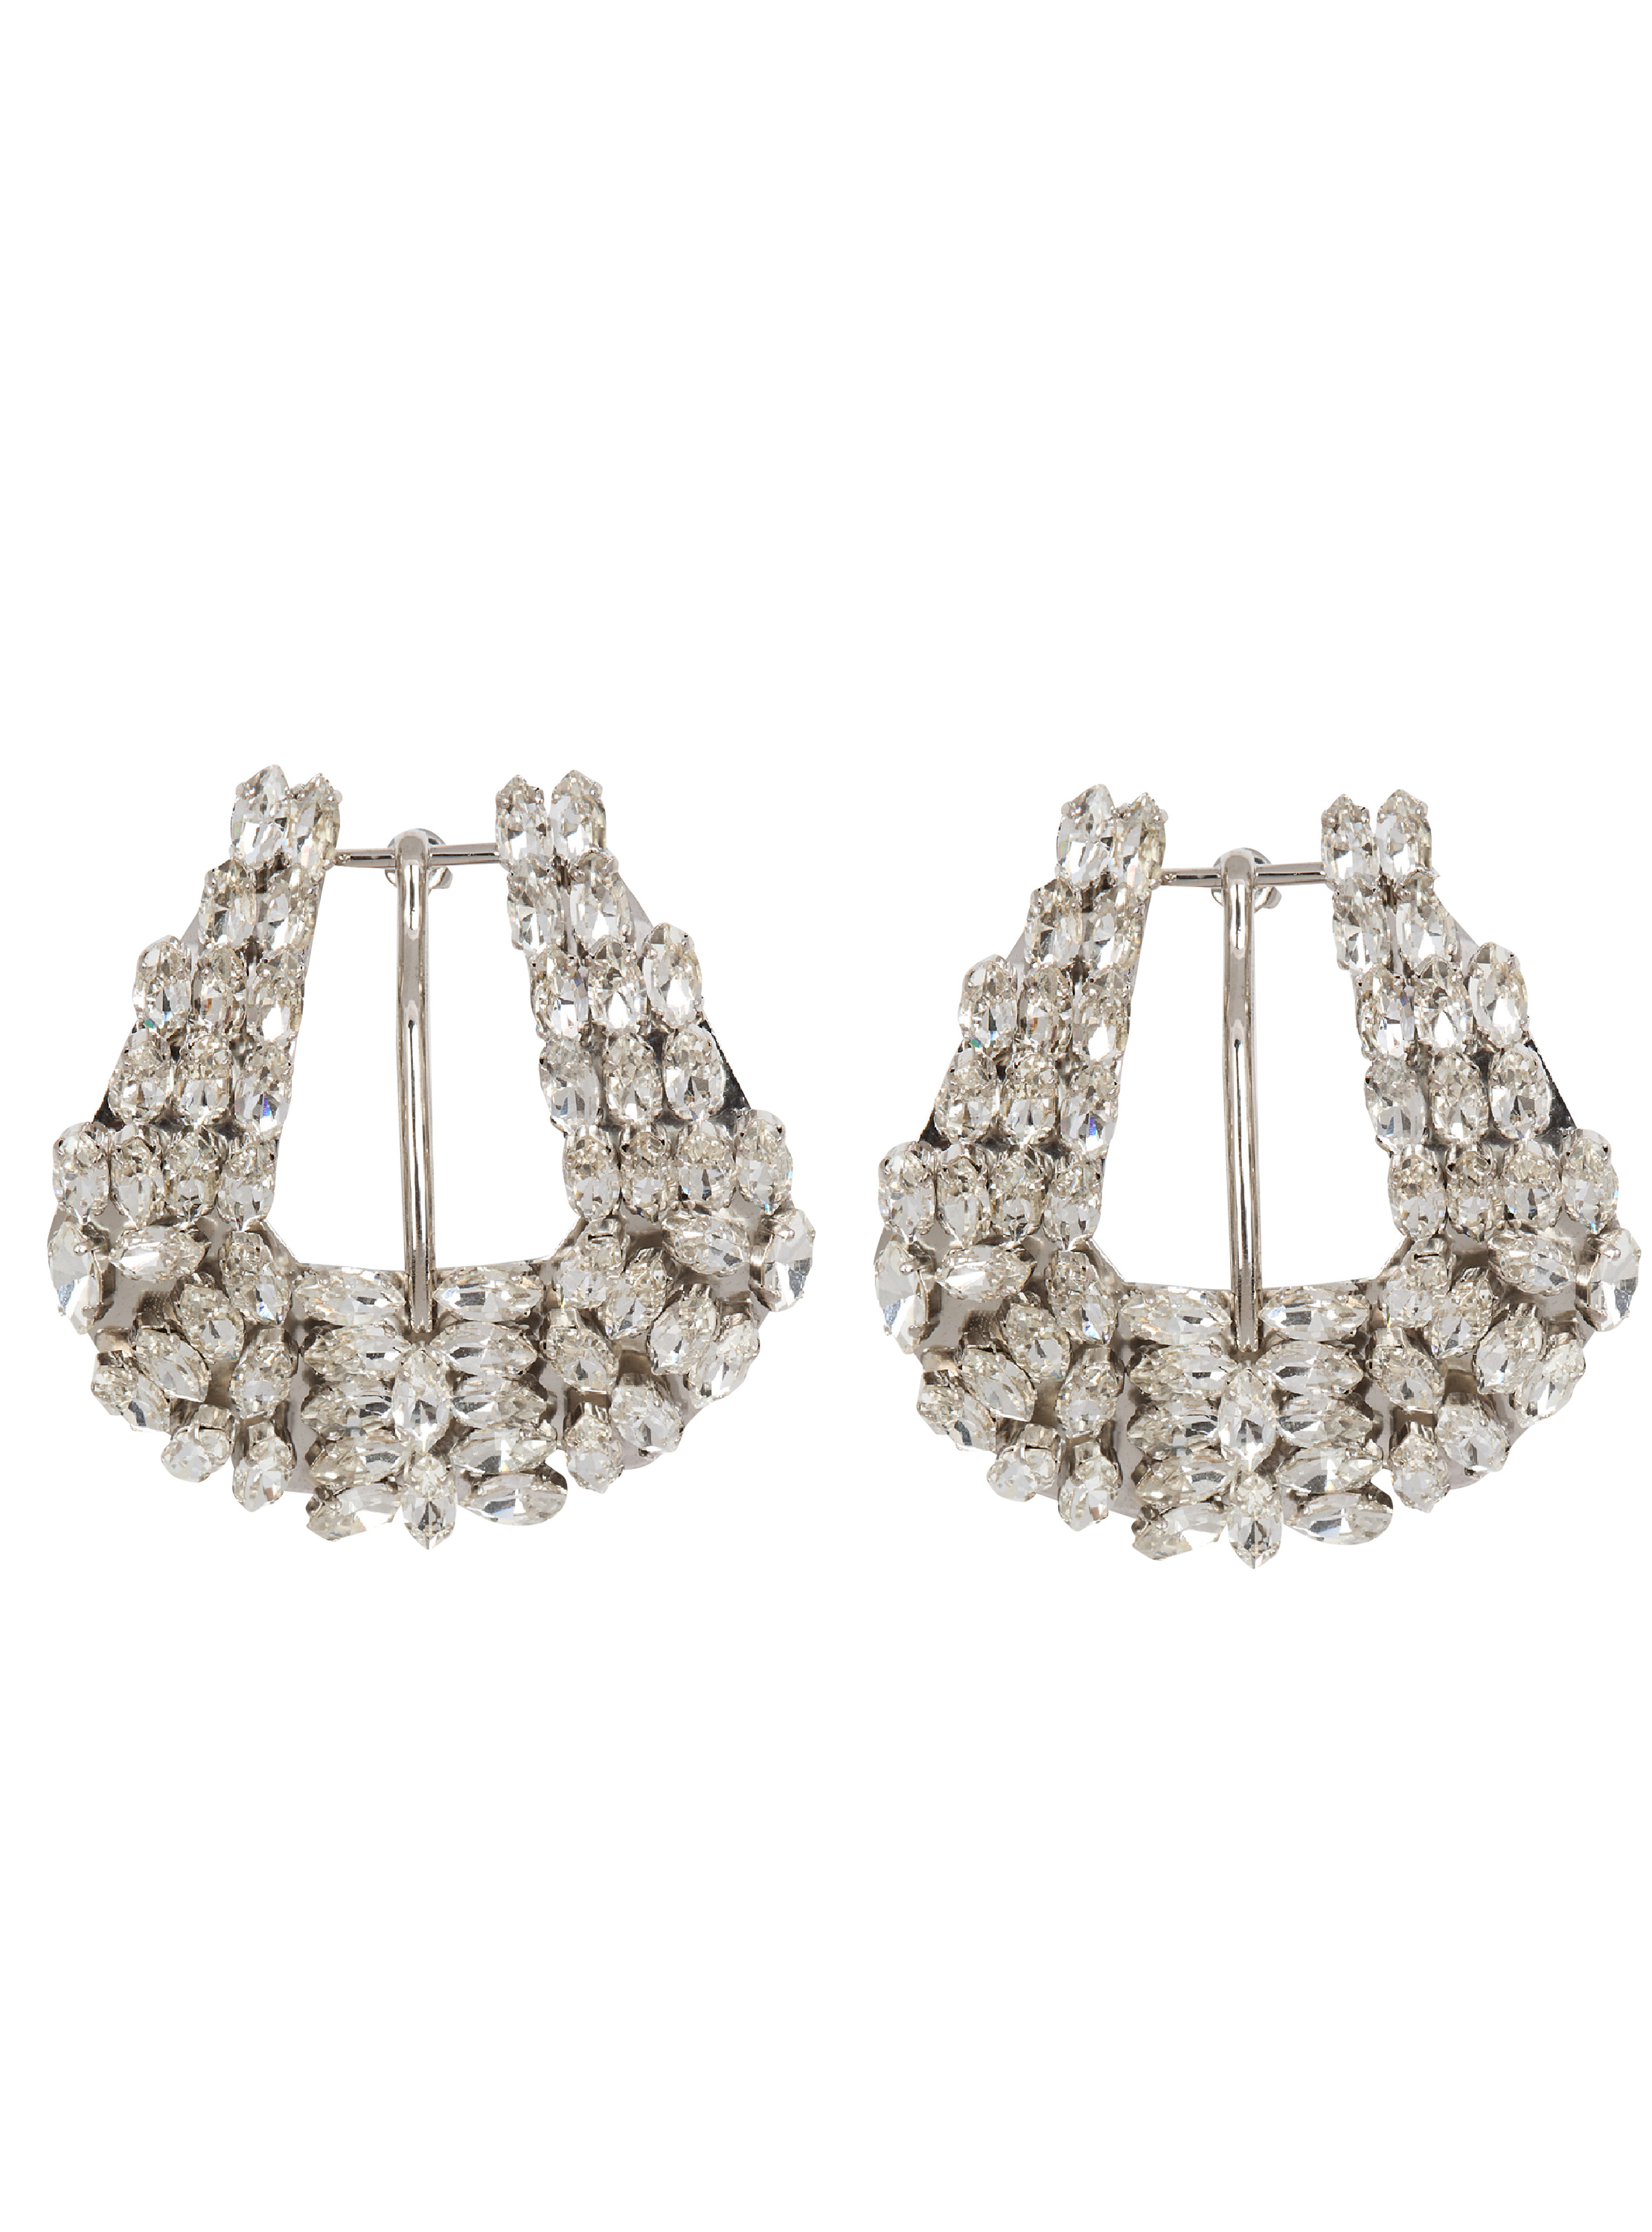 Western crystal earrings - 1